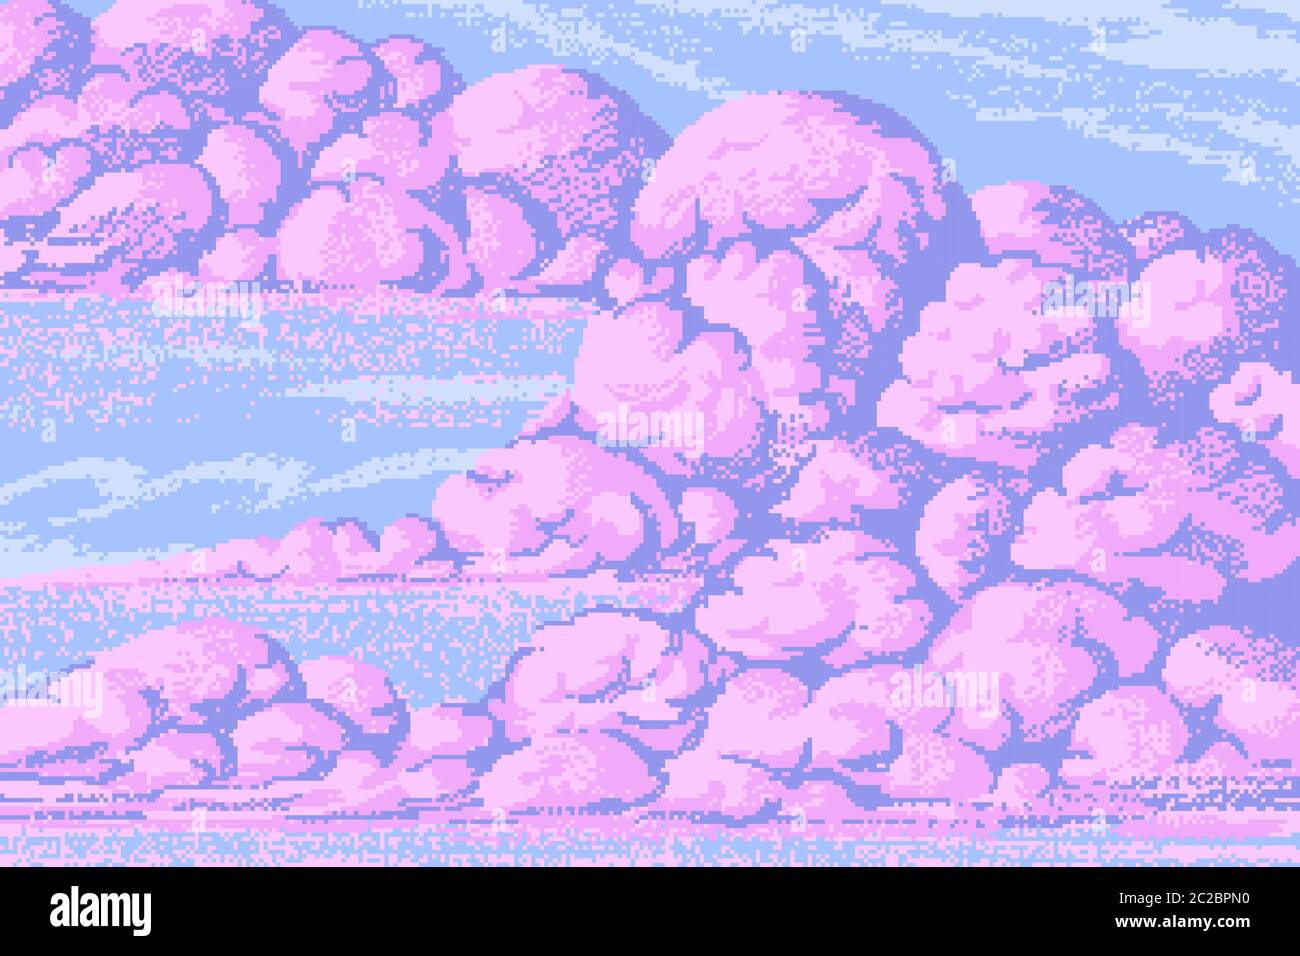 Hình nền đối tượng 8 bit tuyệt đẹp với đám mây nghệ thuật pixel và nền trời màu hồng phép thuật cổ điển, sẽ cho bạn trải nghiệm một không gian đậm chất cổ điển tuyệt đẹp.